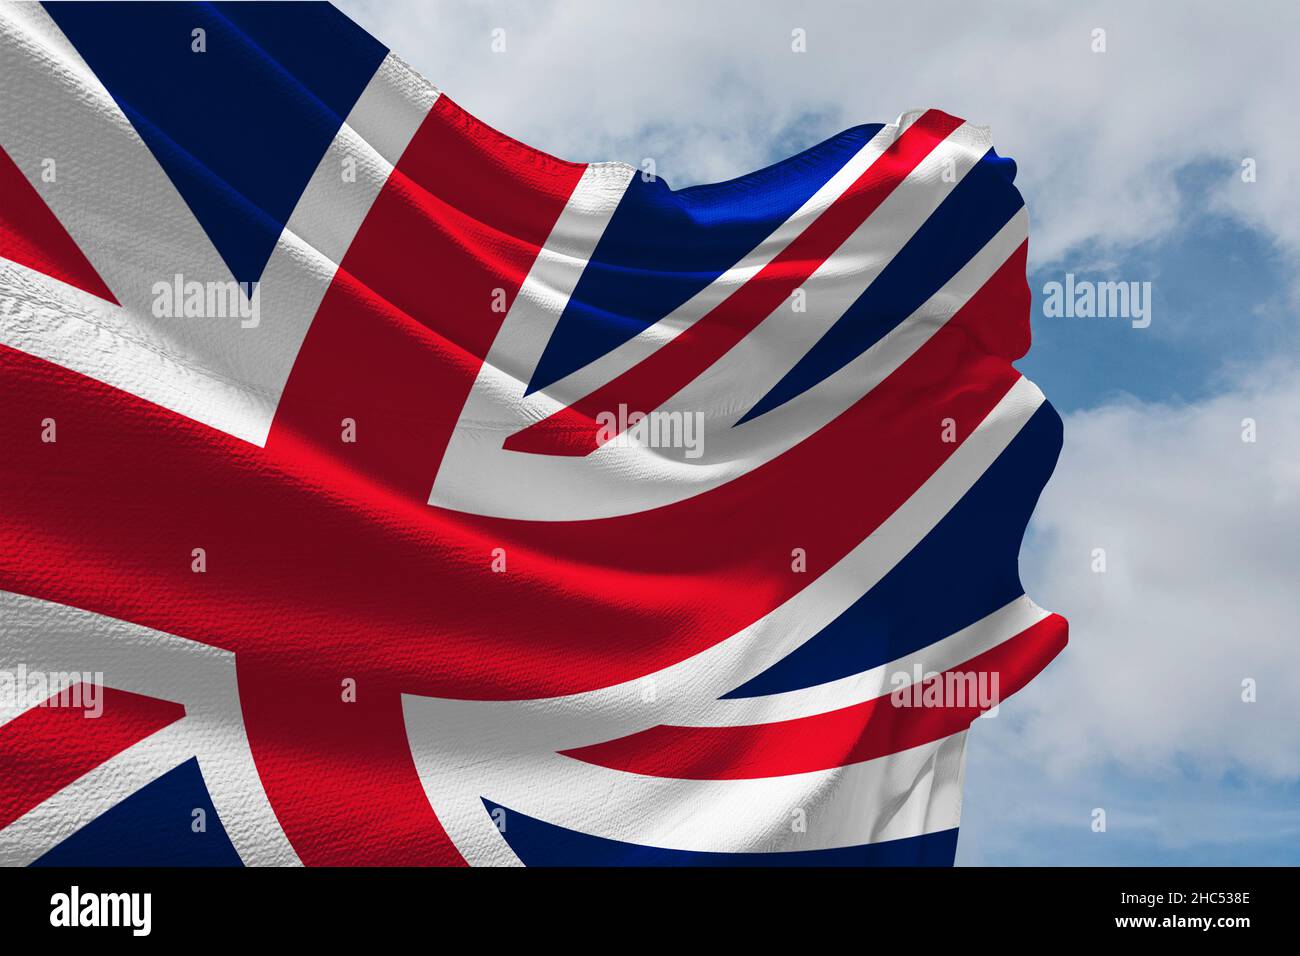 Union Jack, Union Flag, British flag, UK flag Stock Photo